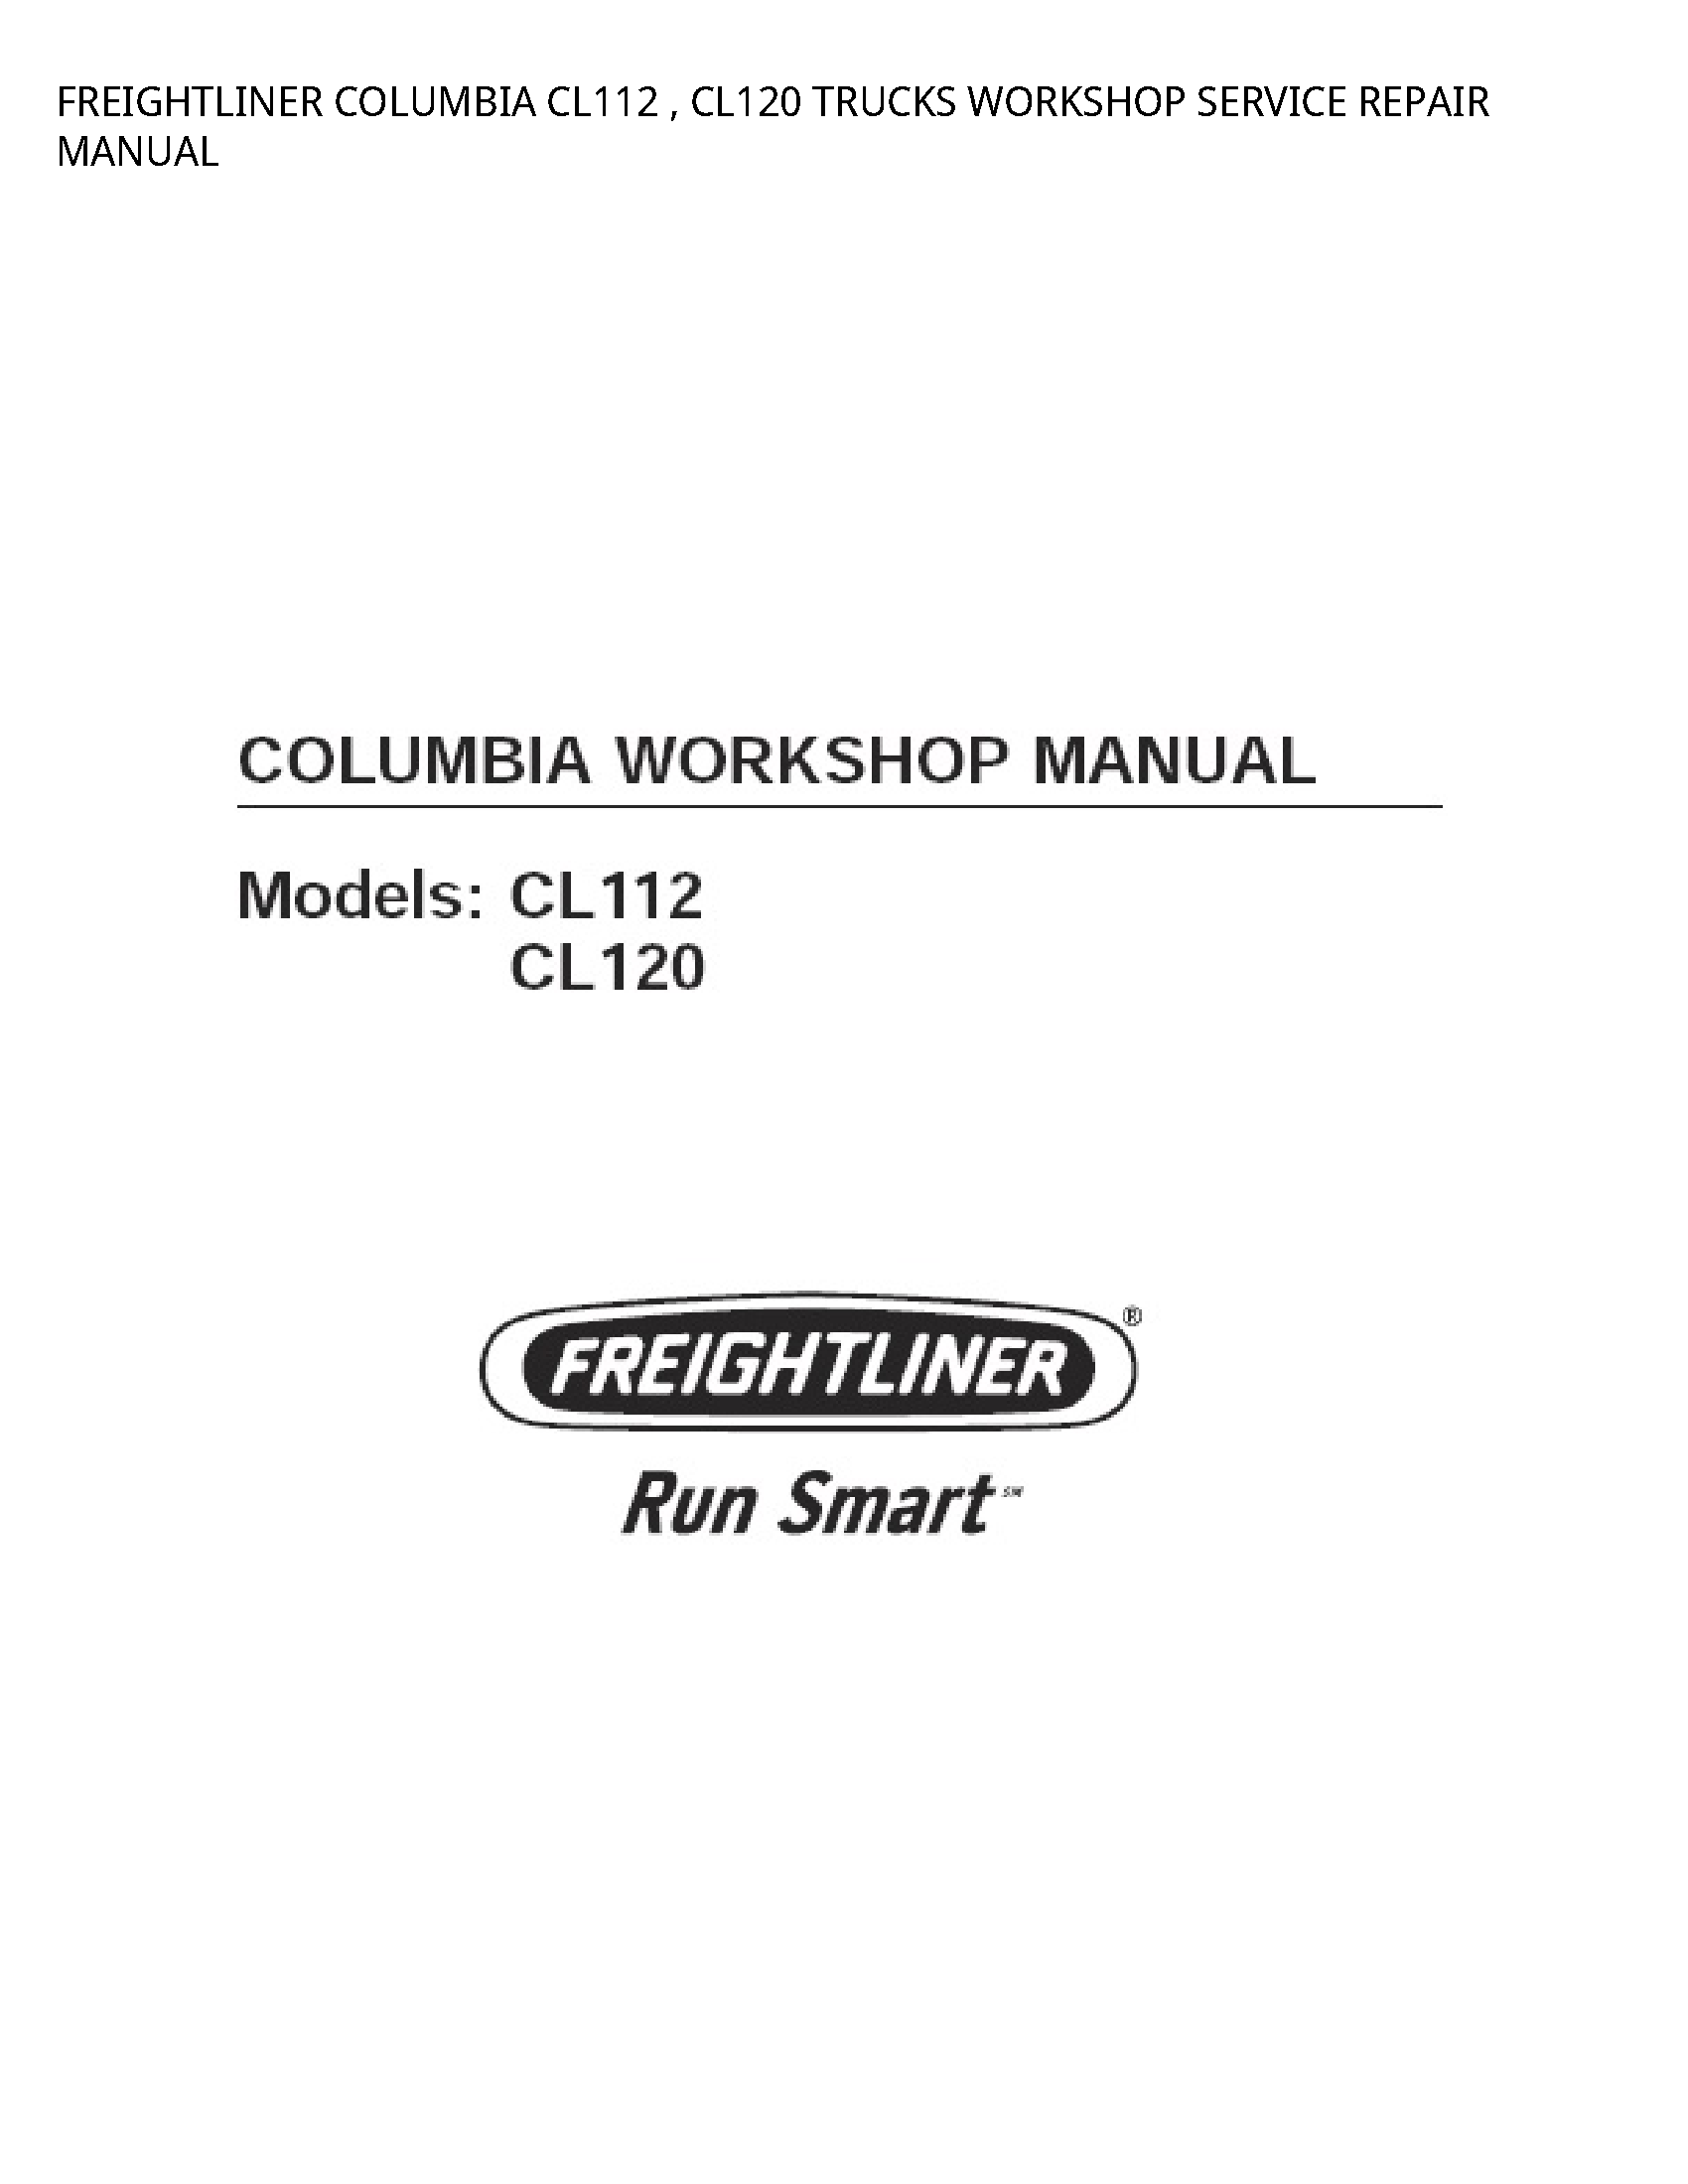 Freightliner CL112 COLUMBIA TRUCKS SERVICE REPAIR manual